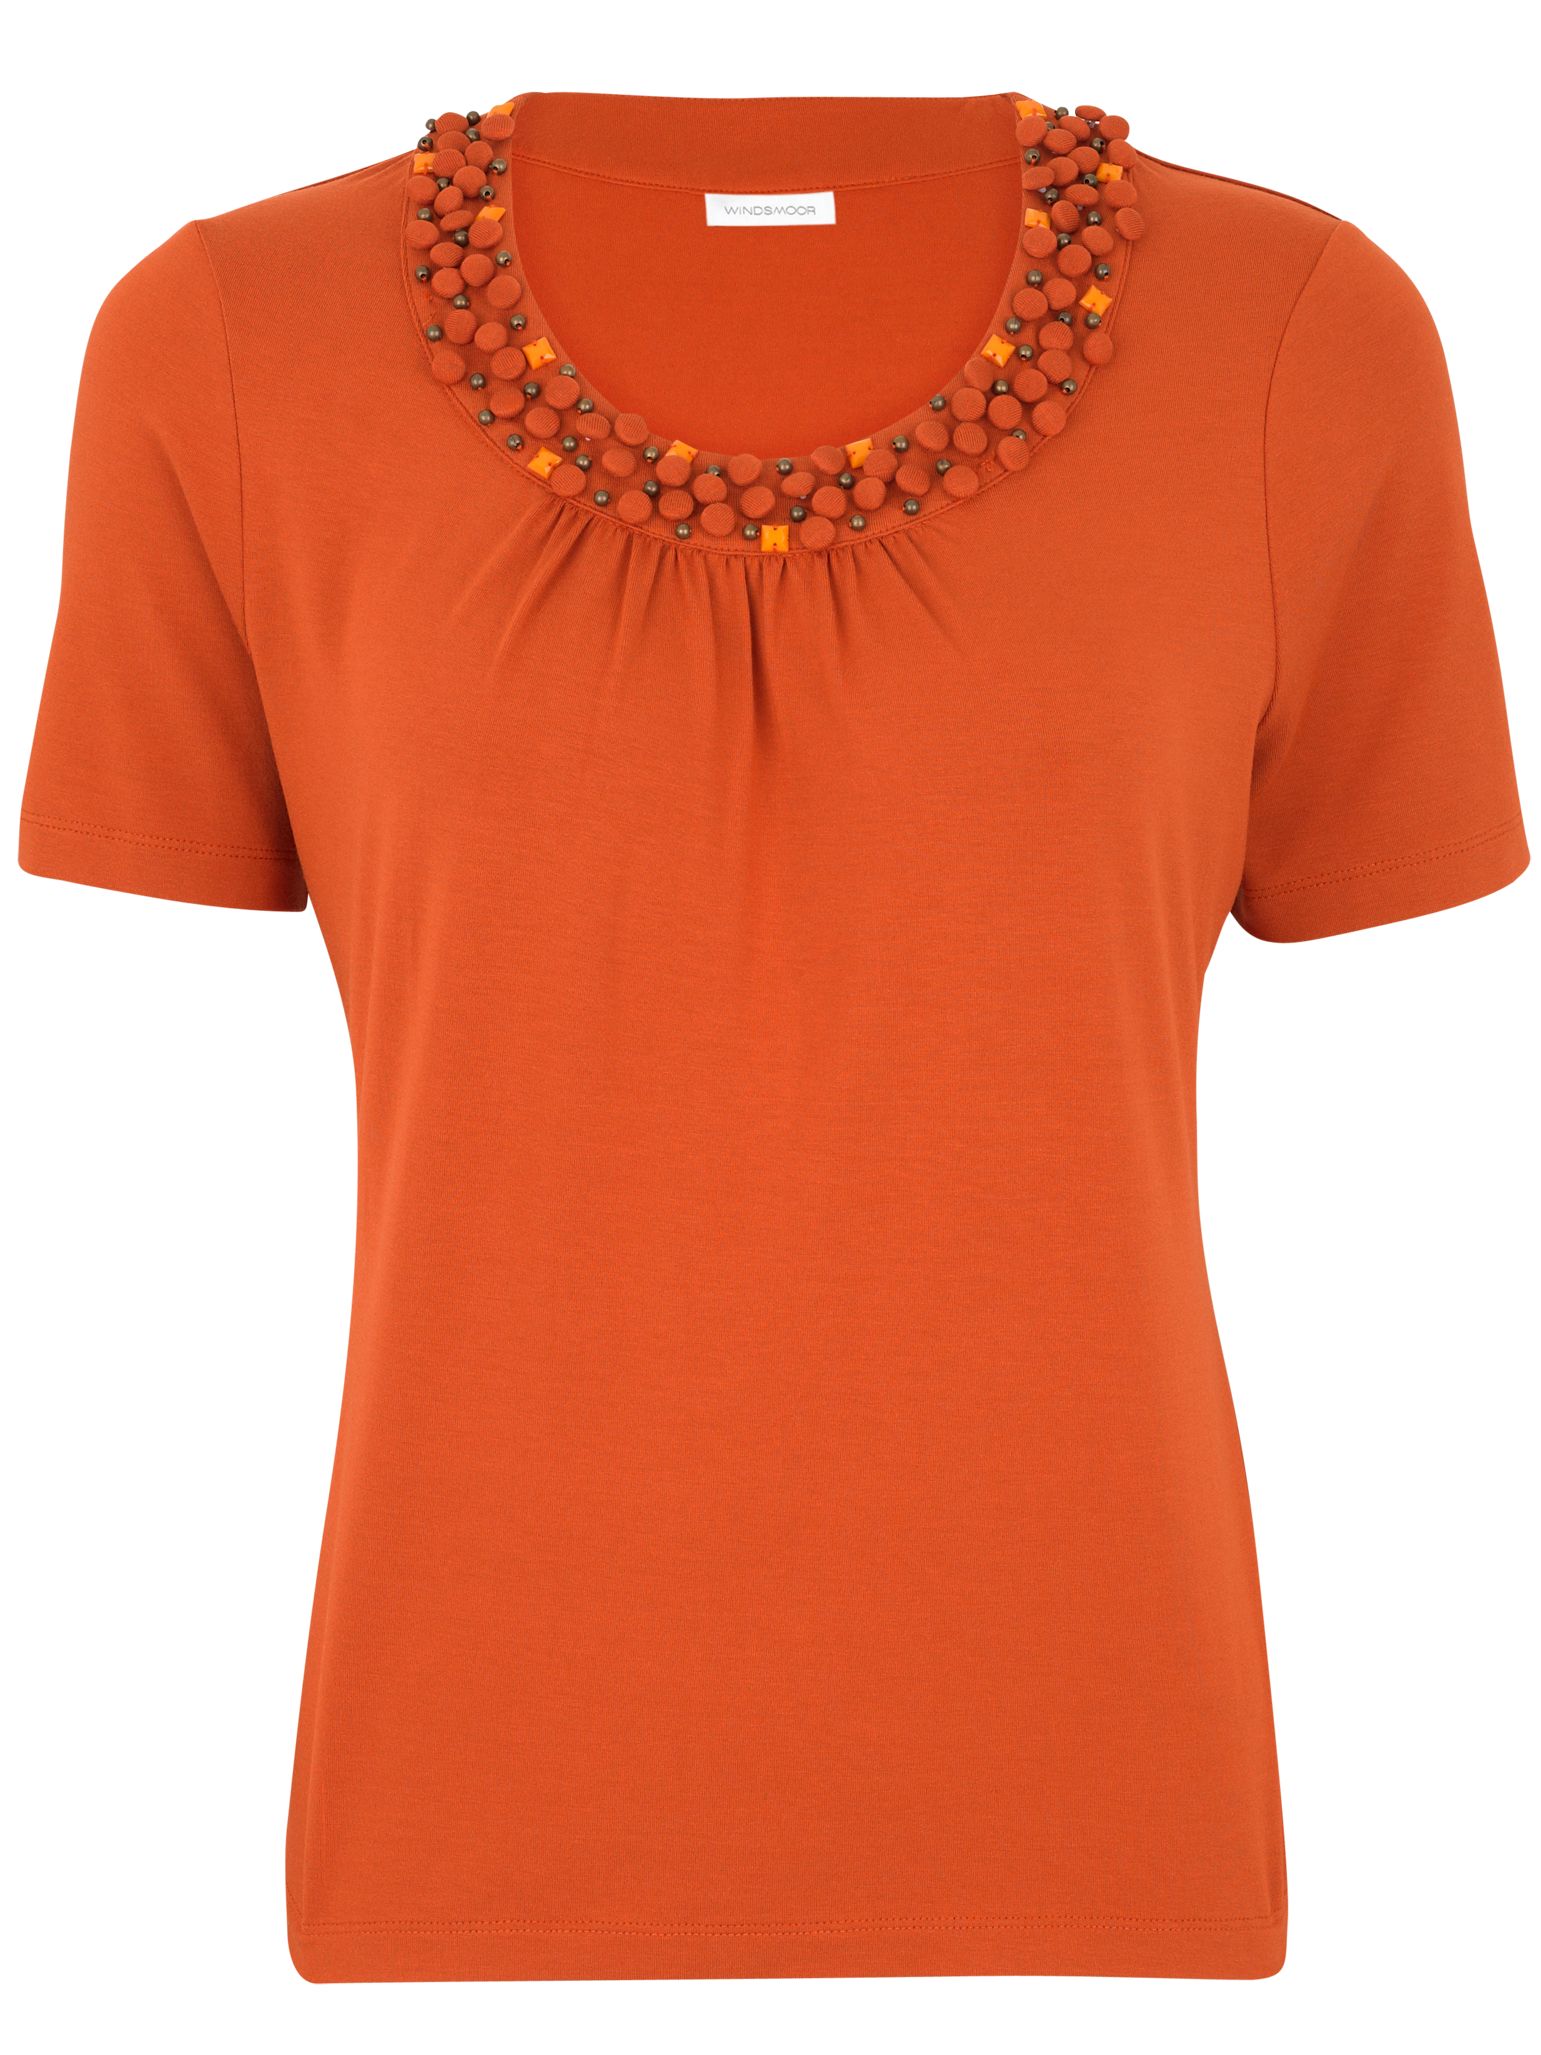 Windsmoor Beaded Jersey T-Shirt, Burnt Orange